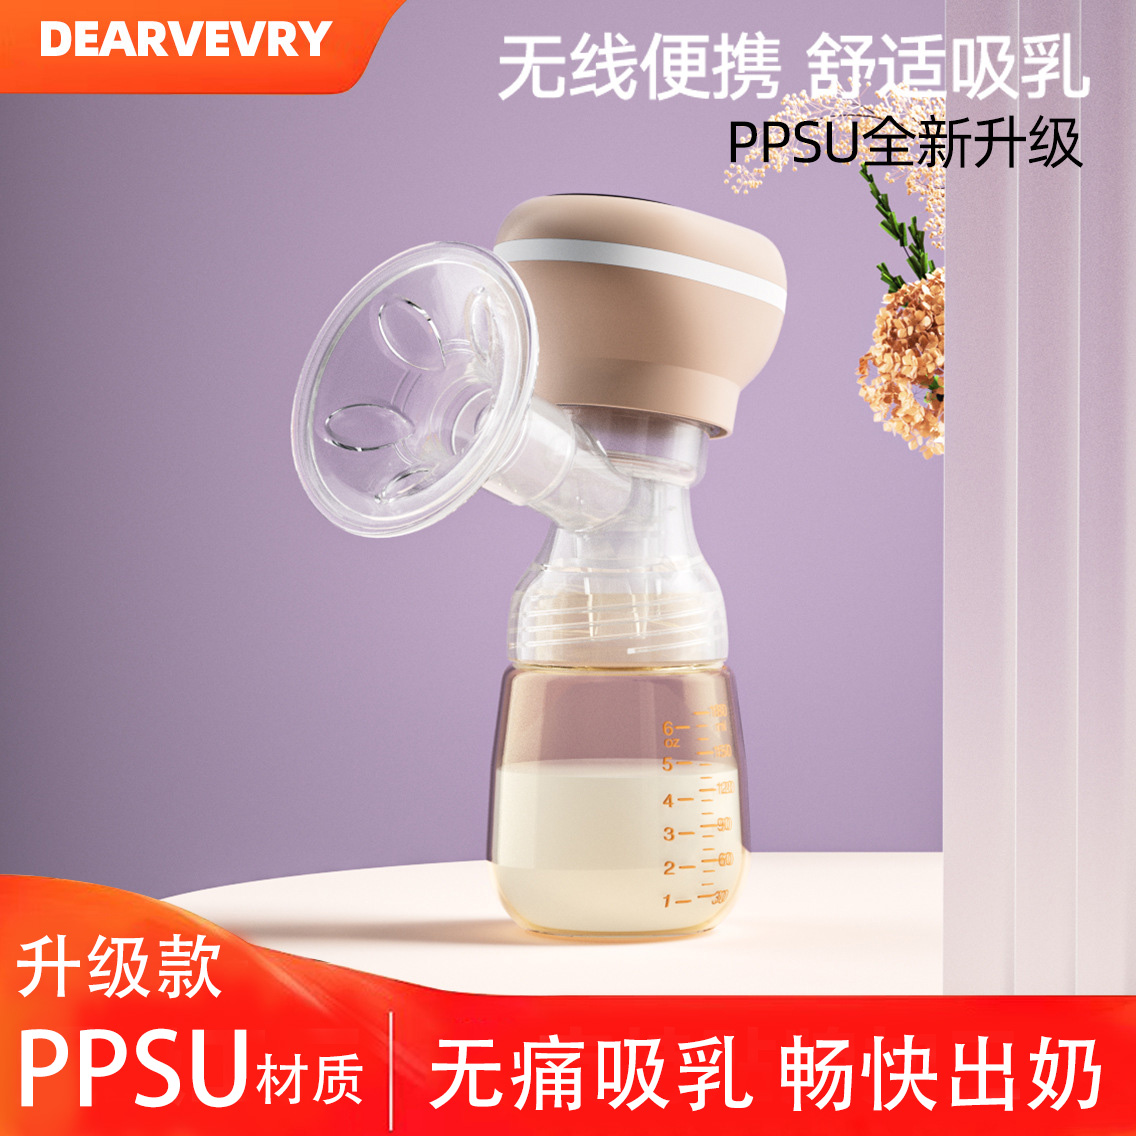 电动吸奶器挤奶吸乳器全自动便携静音一体式自动孕产妇产后开奶